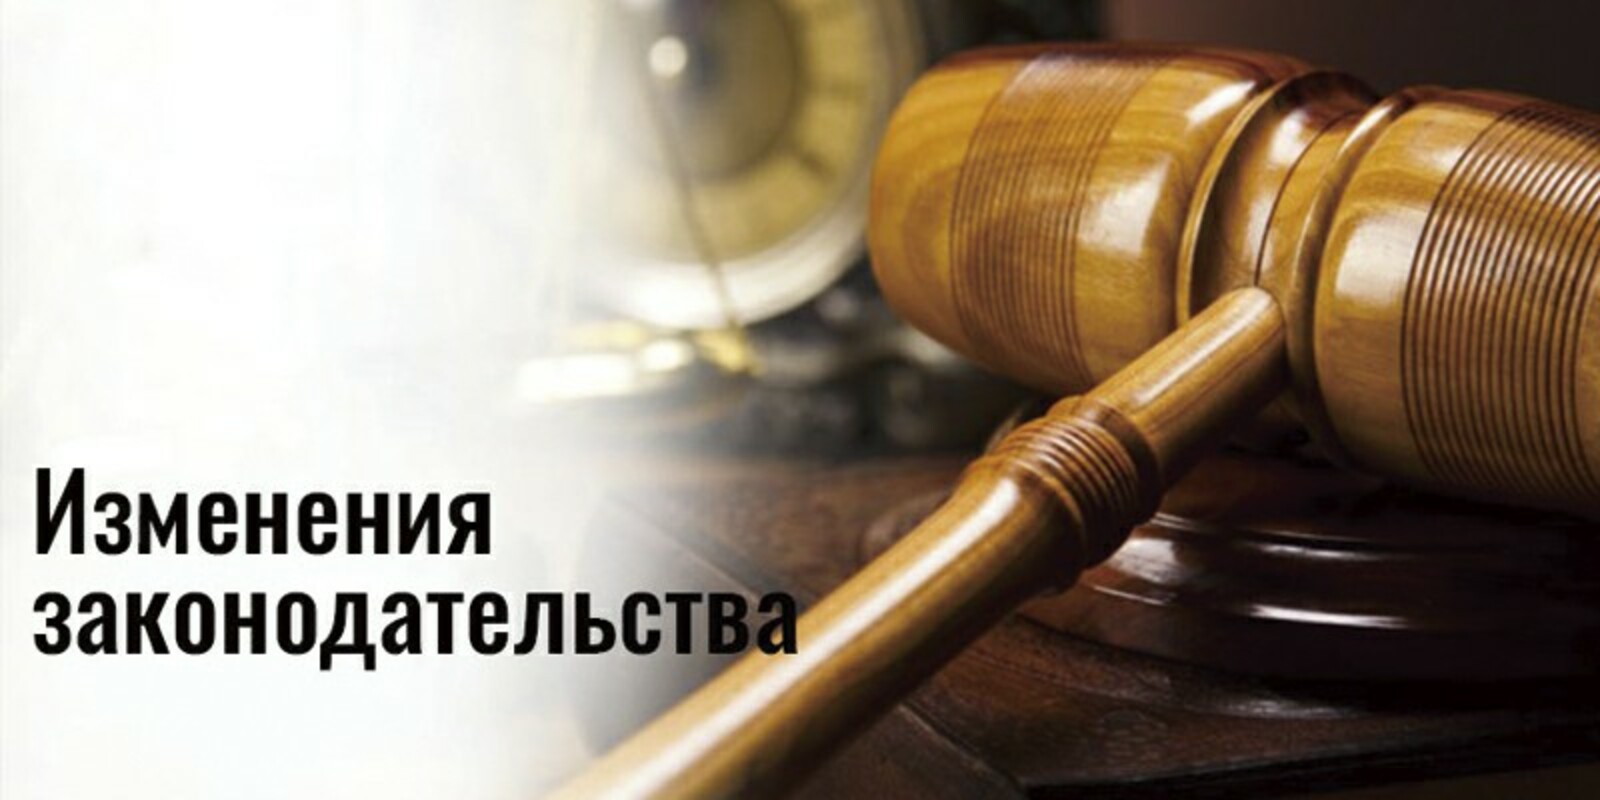 В декабре в России вступают в силу новые законы